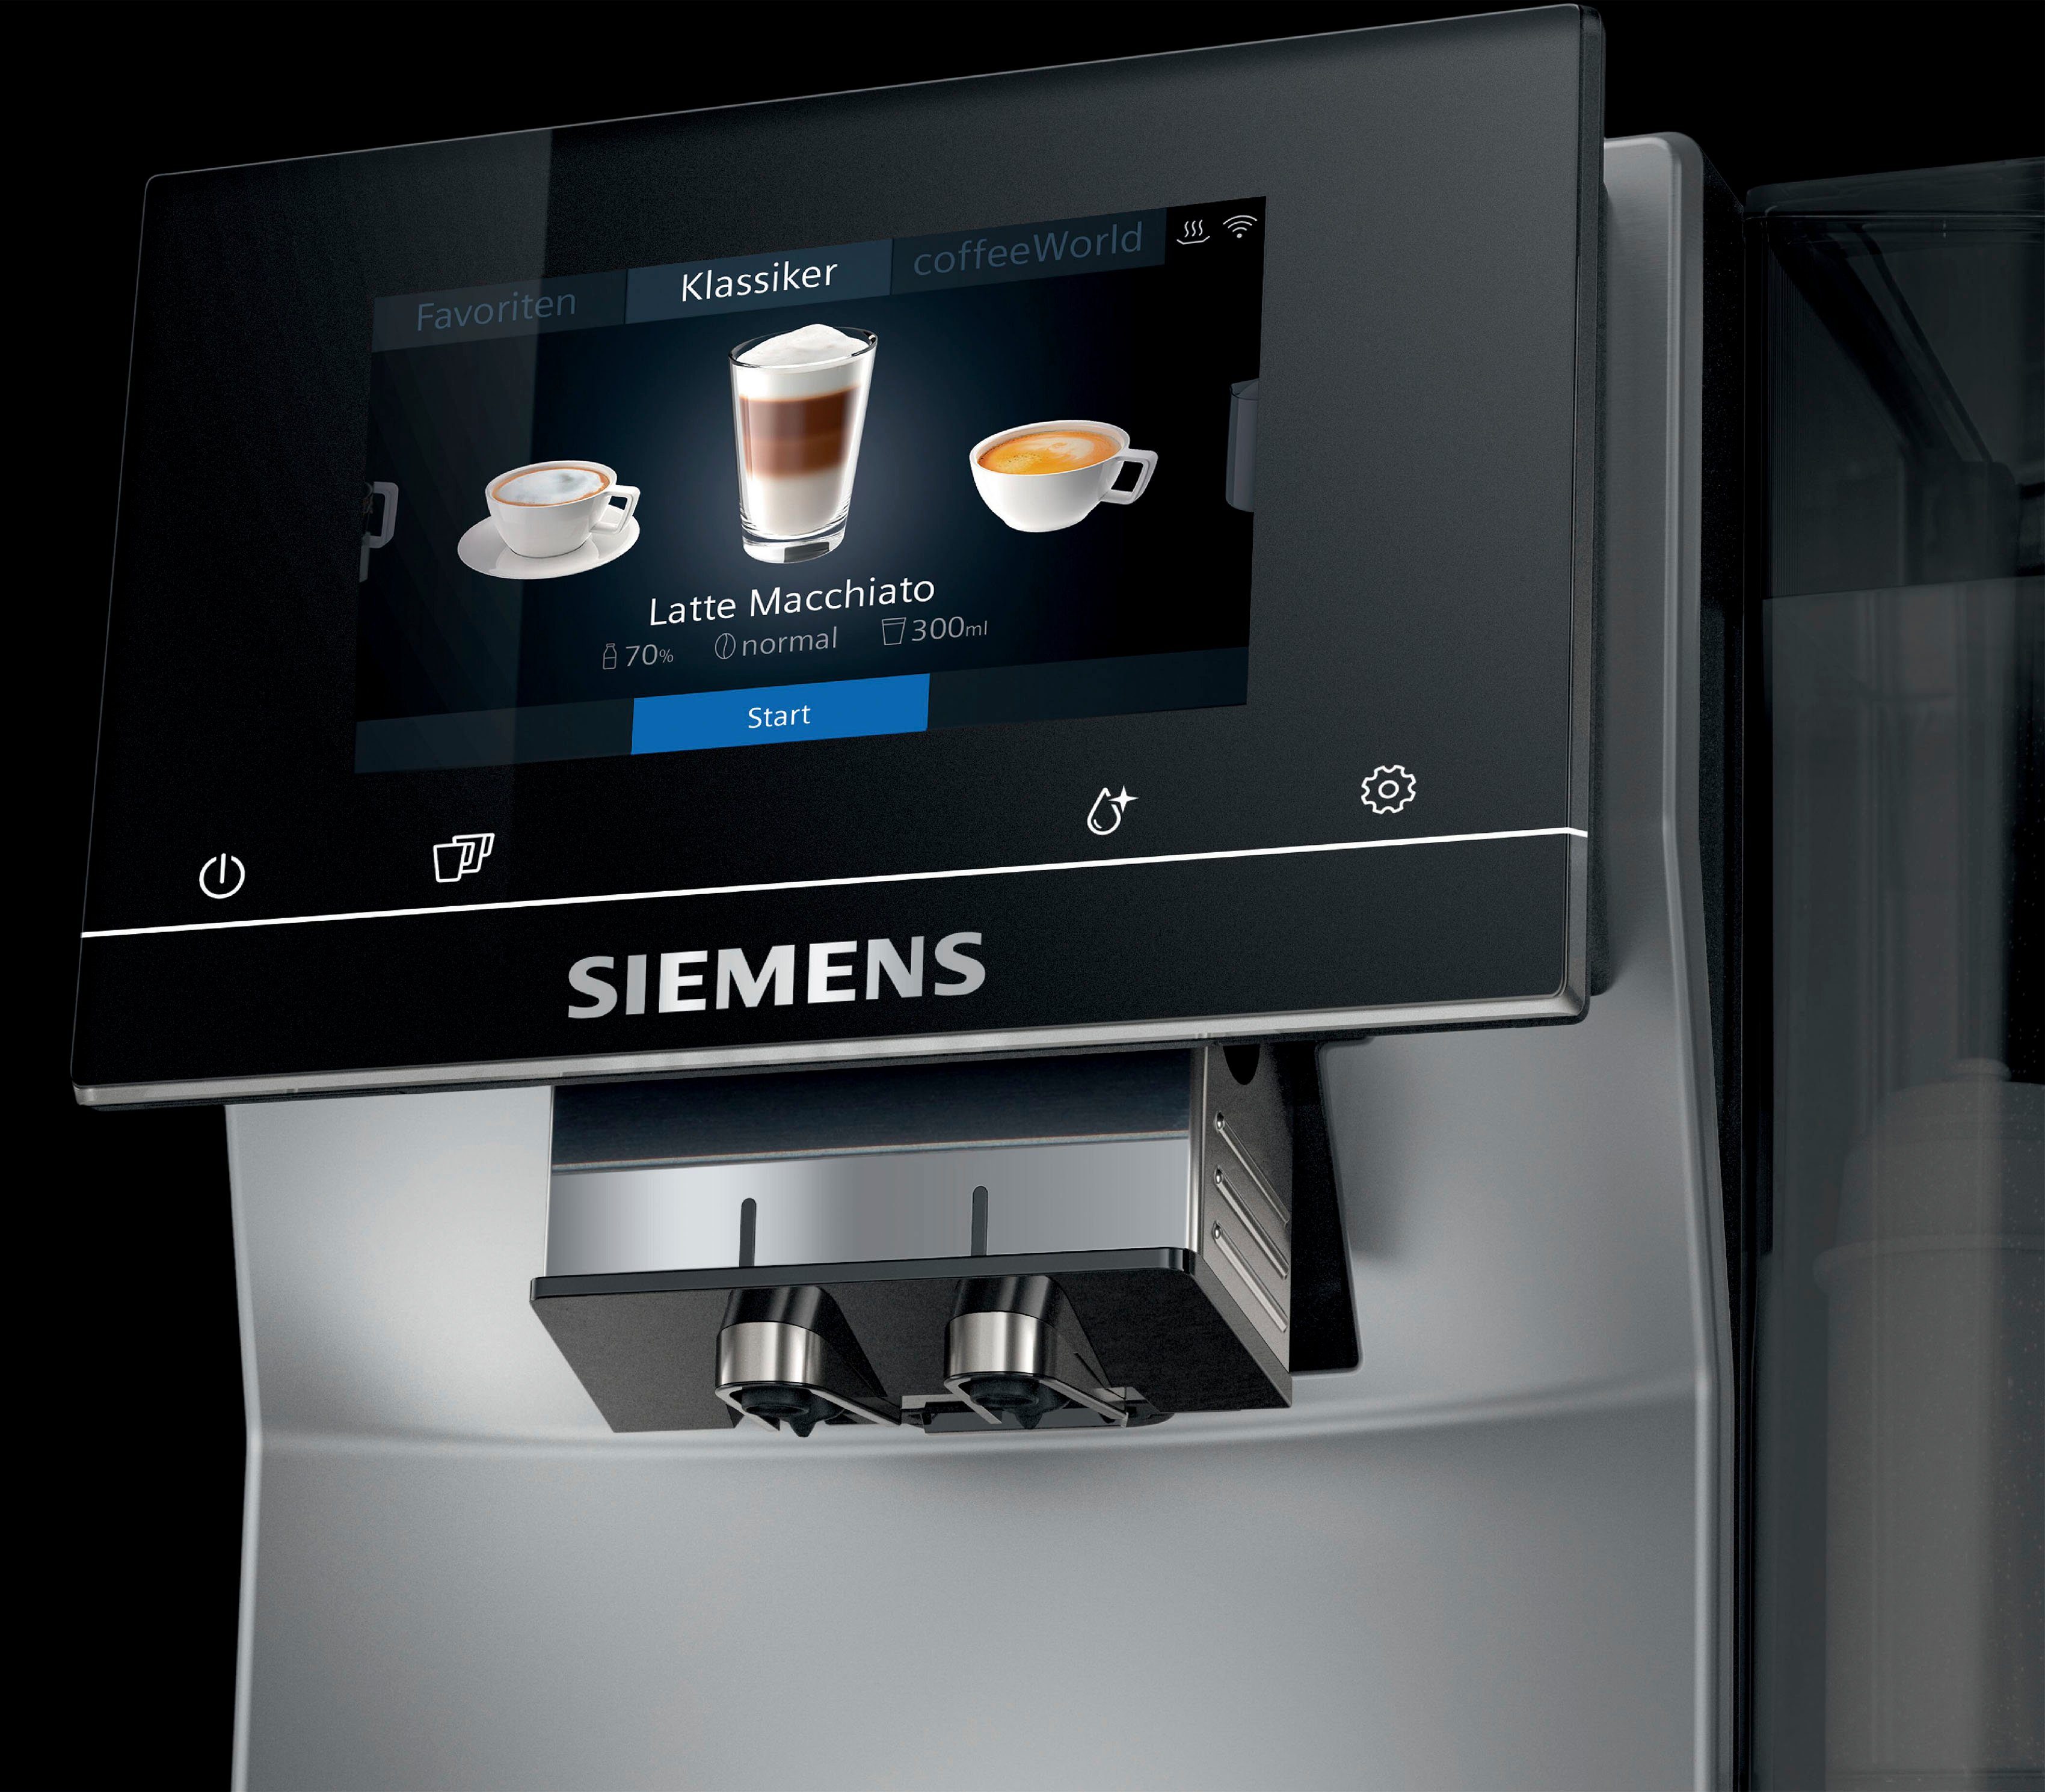 EQ.700 bis Milchsystem-Reinigung Profile silber Inox TP705D47, 10 speicherbar, Kaffeevollautomat metallic SIEMENS Full-Touch-Display,